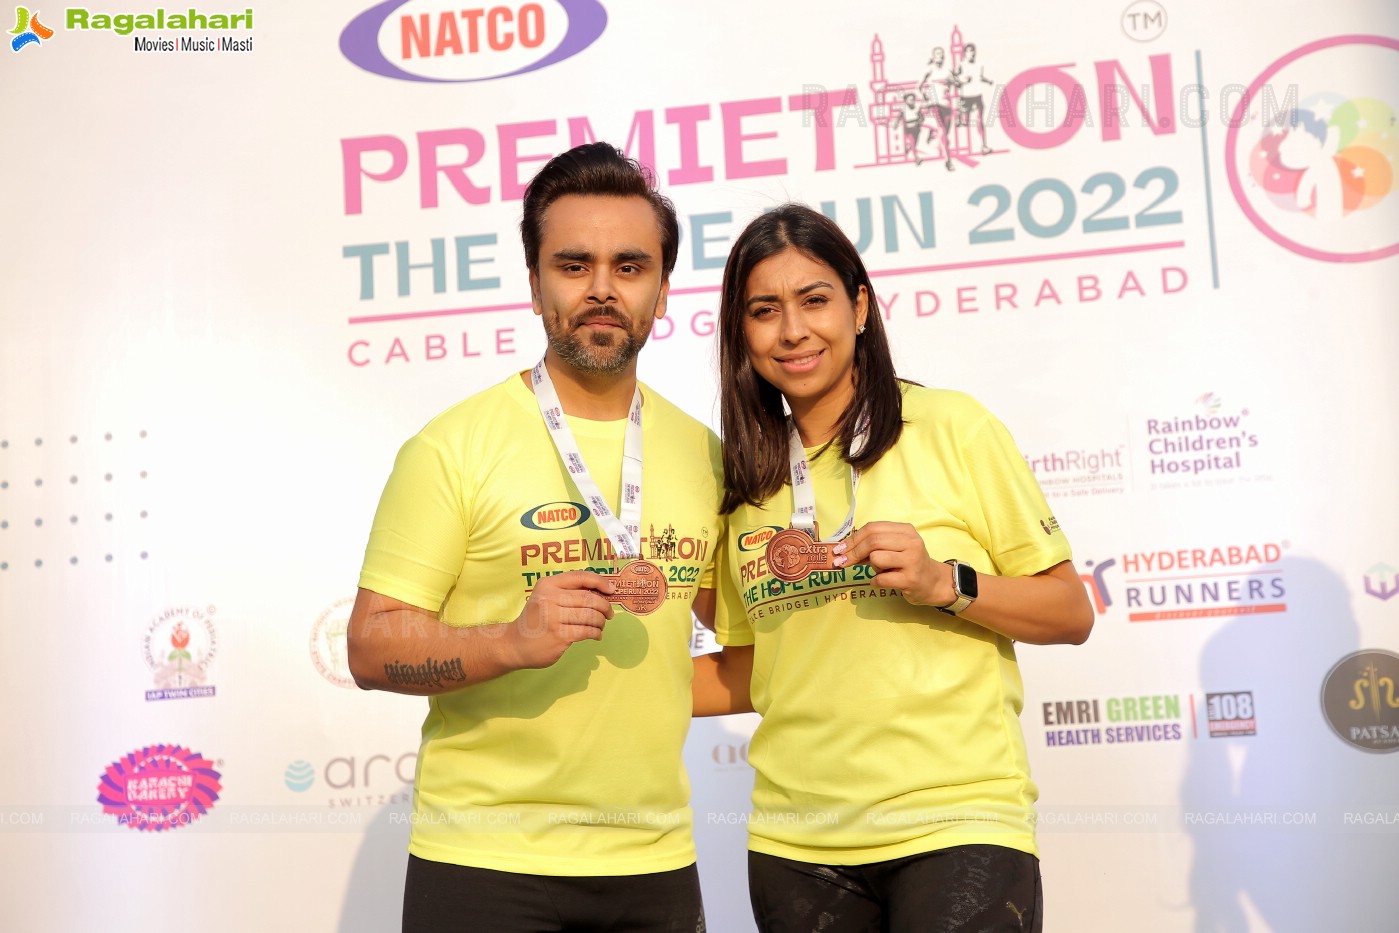 Premiethon - A Unique Marathon Aimed at Aiding Premature Babies By Extra Mile Foundation